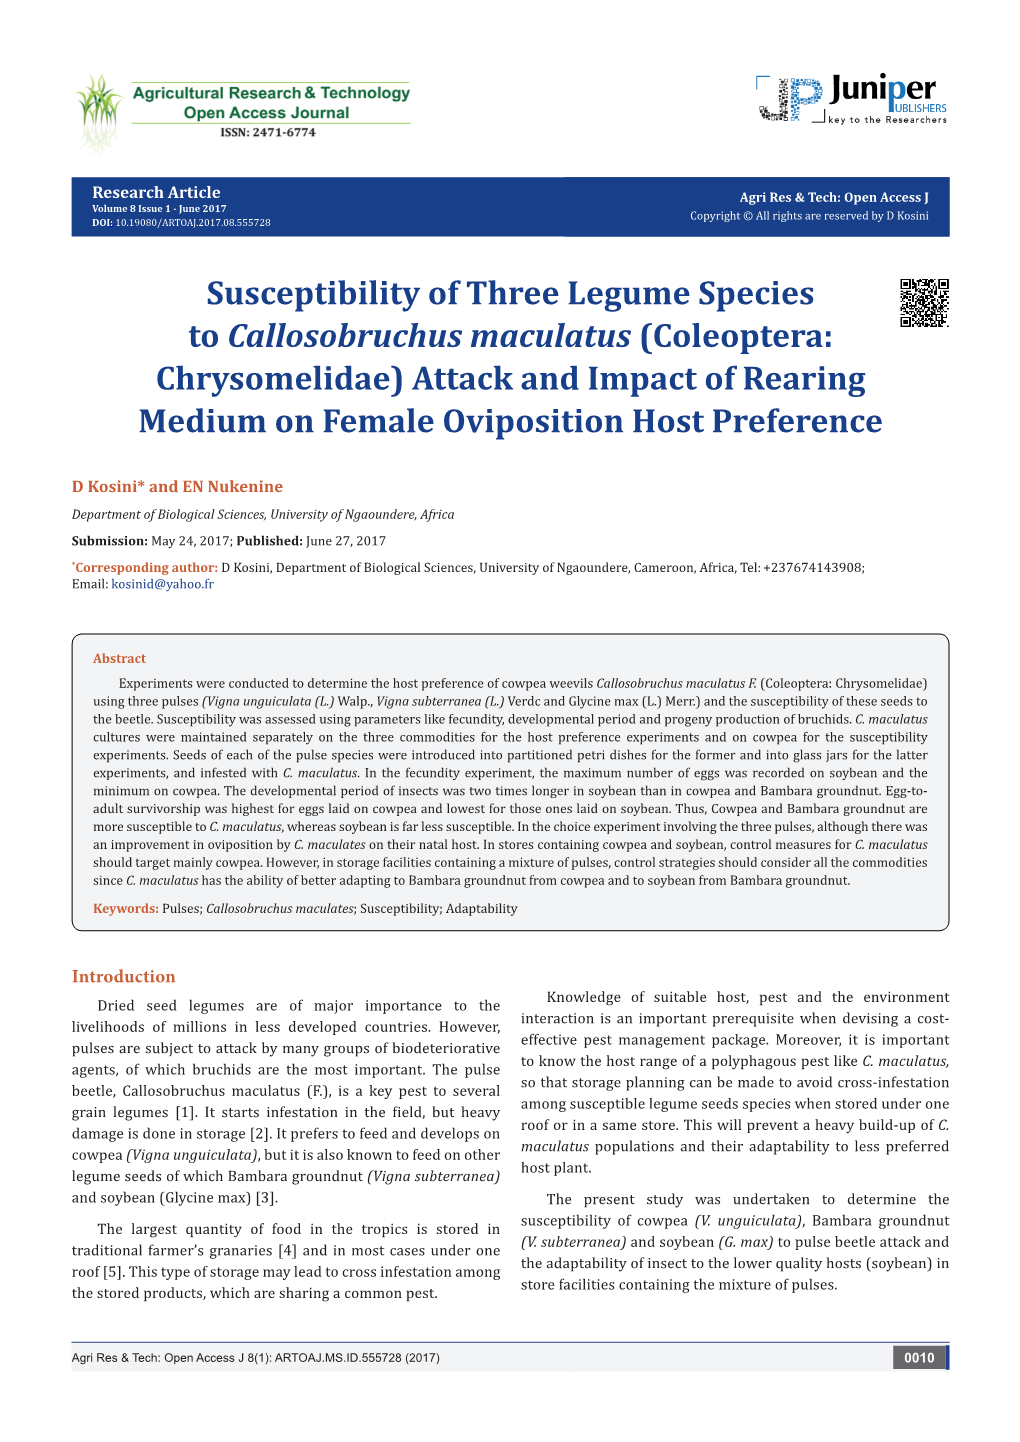 Susceptibility of Three Legume Species to Callosobruchus Maculatus